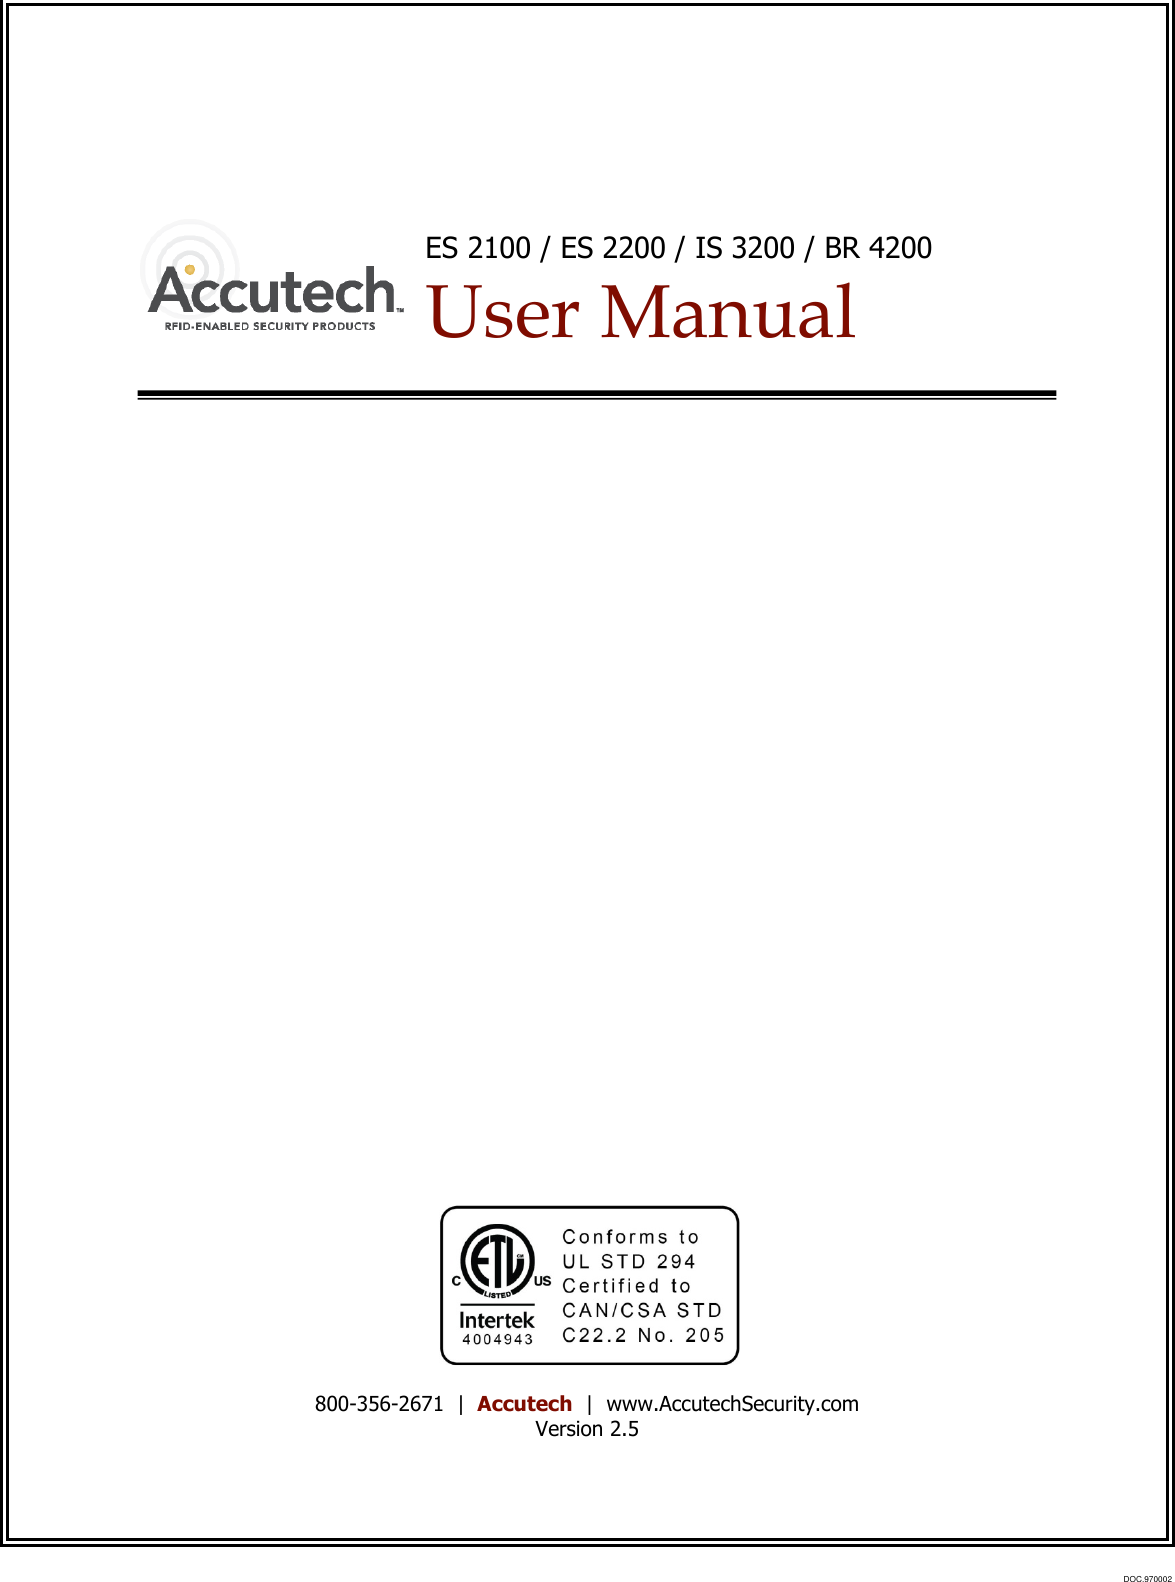   ES 2100 / ES 2200 / IS 3200 / BR 4200  User Manual                           800-356-2671  |  Accutech  |  www.AccutechSecurity.com Version 2.5DOC.970002 